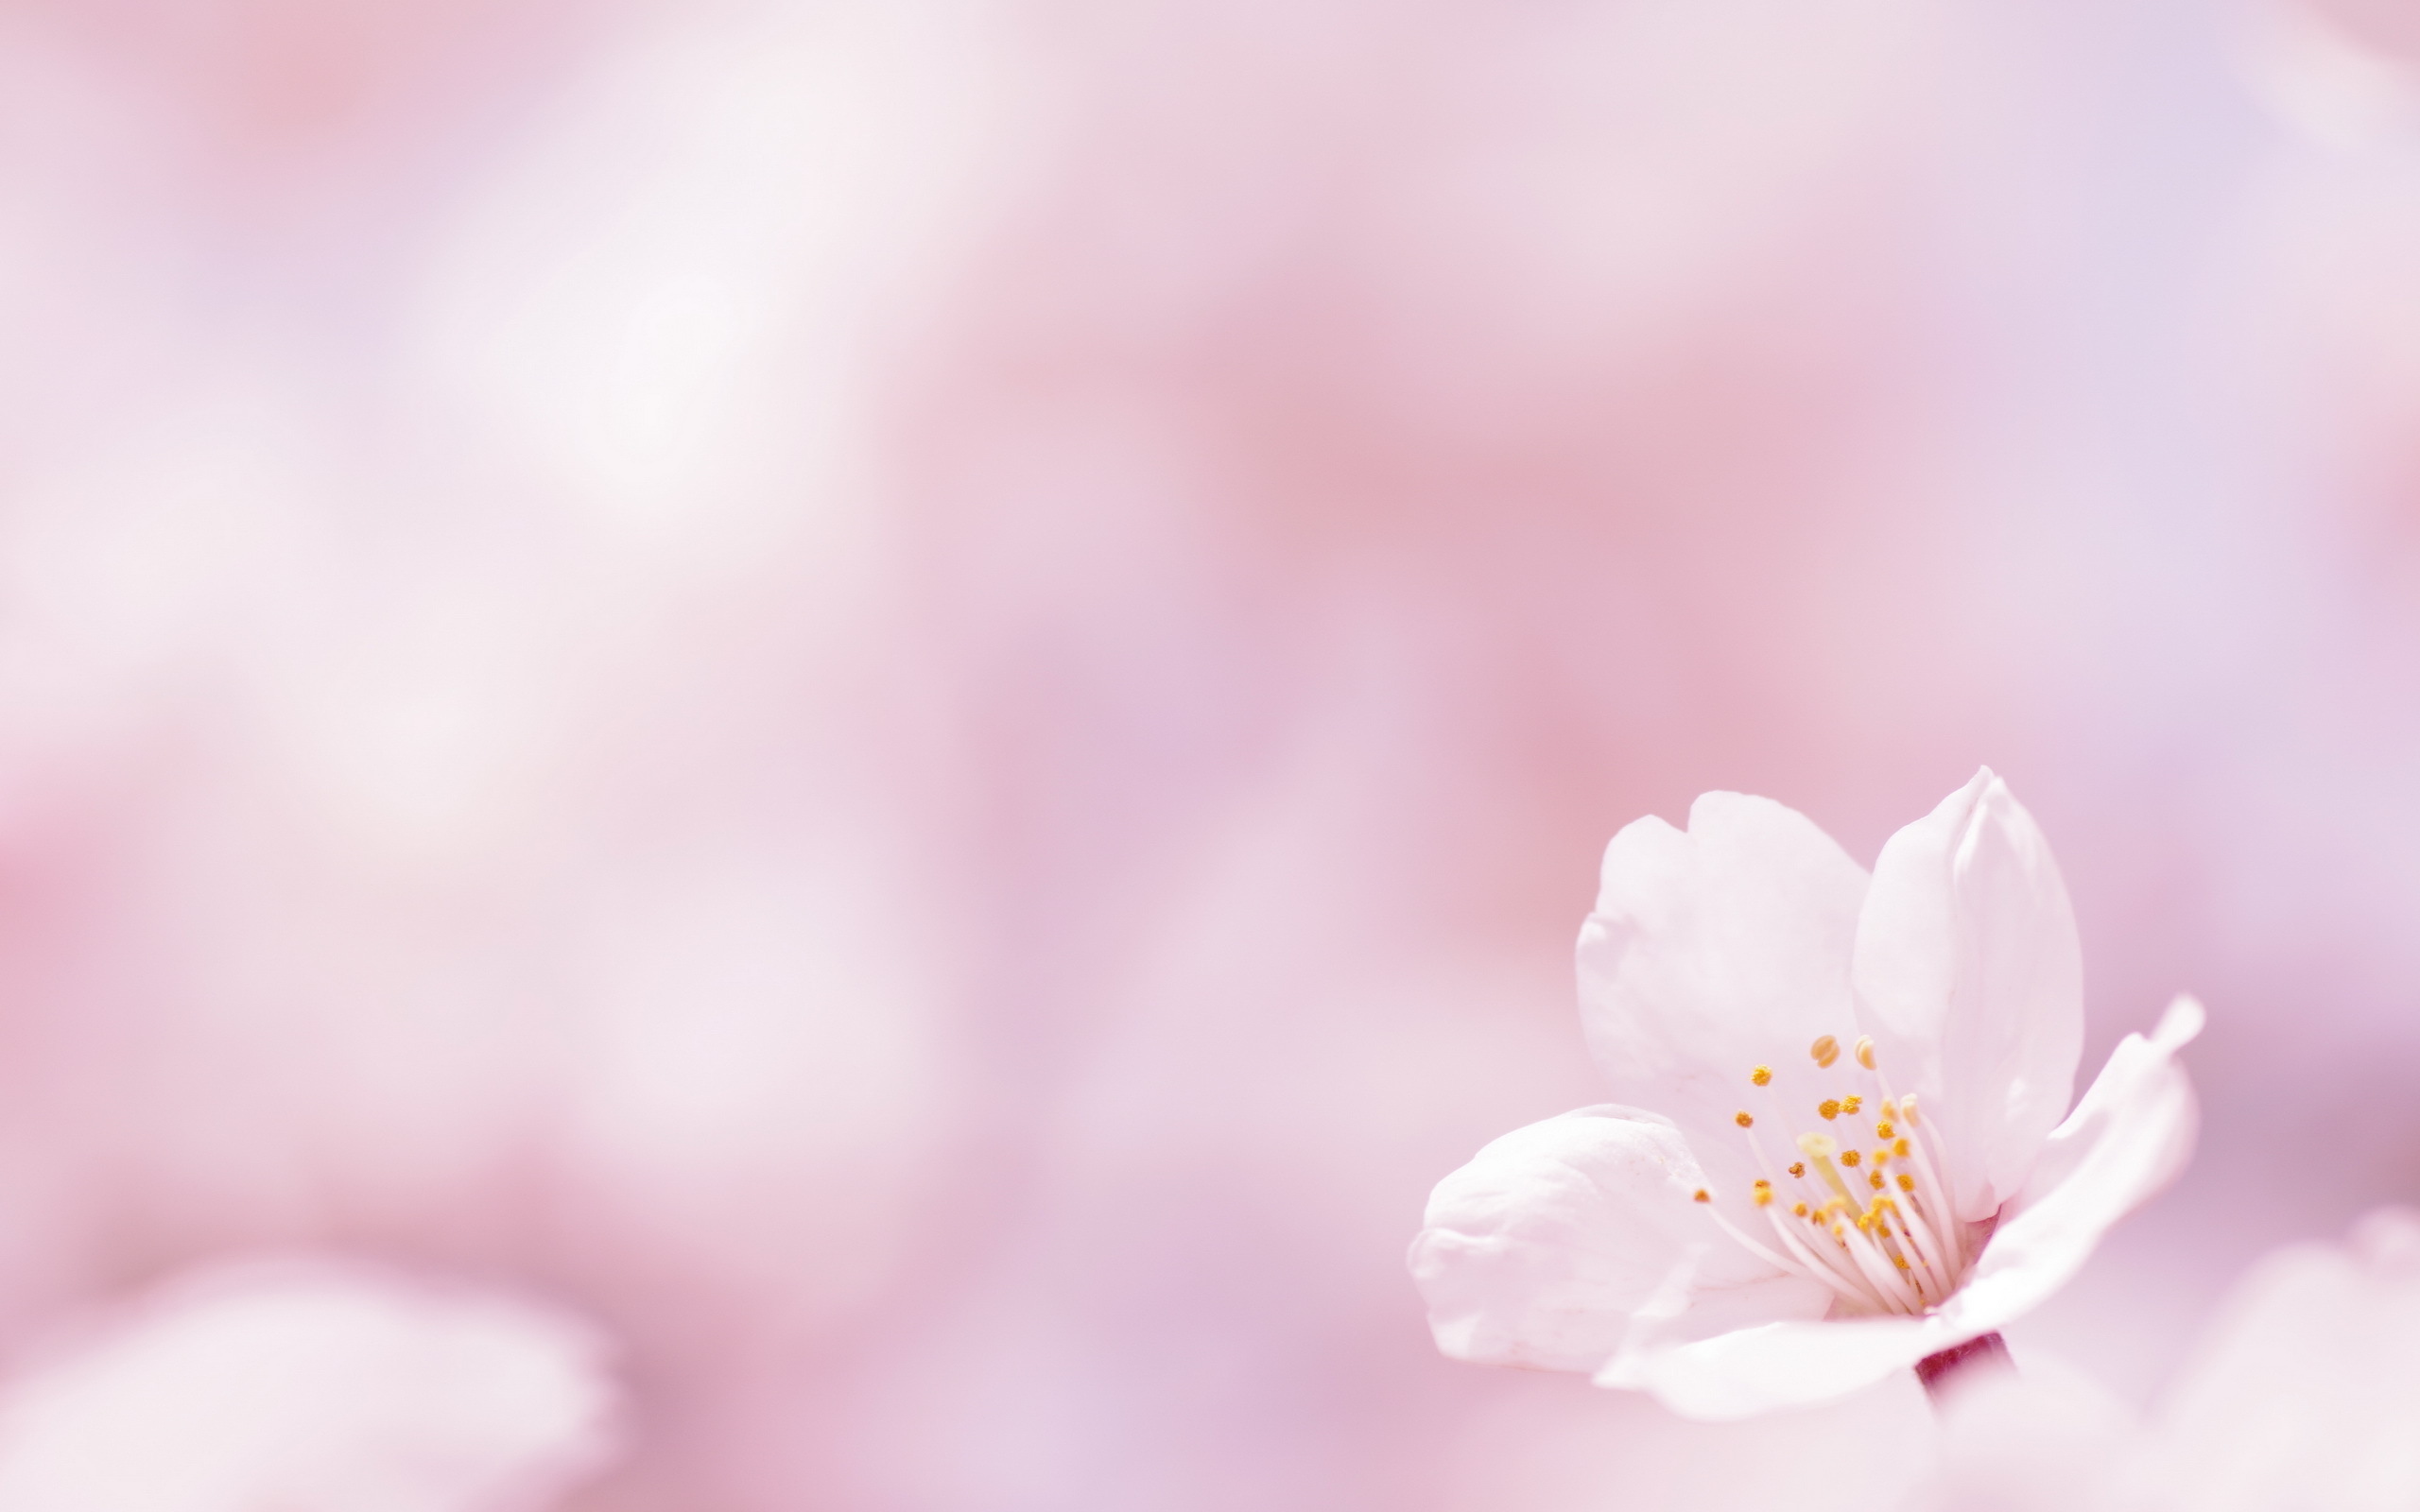 Mùa xuân đã đến và bạn muốn tìm một hình nền hoa màu hồng tươi sáng để sửa sang cho màn hình máy tính của mình? Không nên bỏ qua cơ hội tải xuống những hình nền hoa xuân màu hồng đẹp miễn phí để thay đổi lại vẻ đẹp của màn hình bạn!